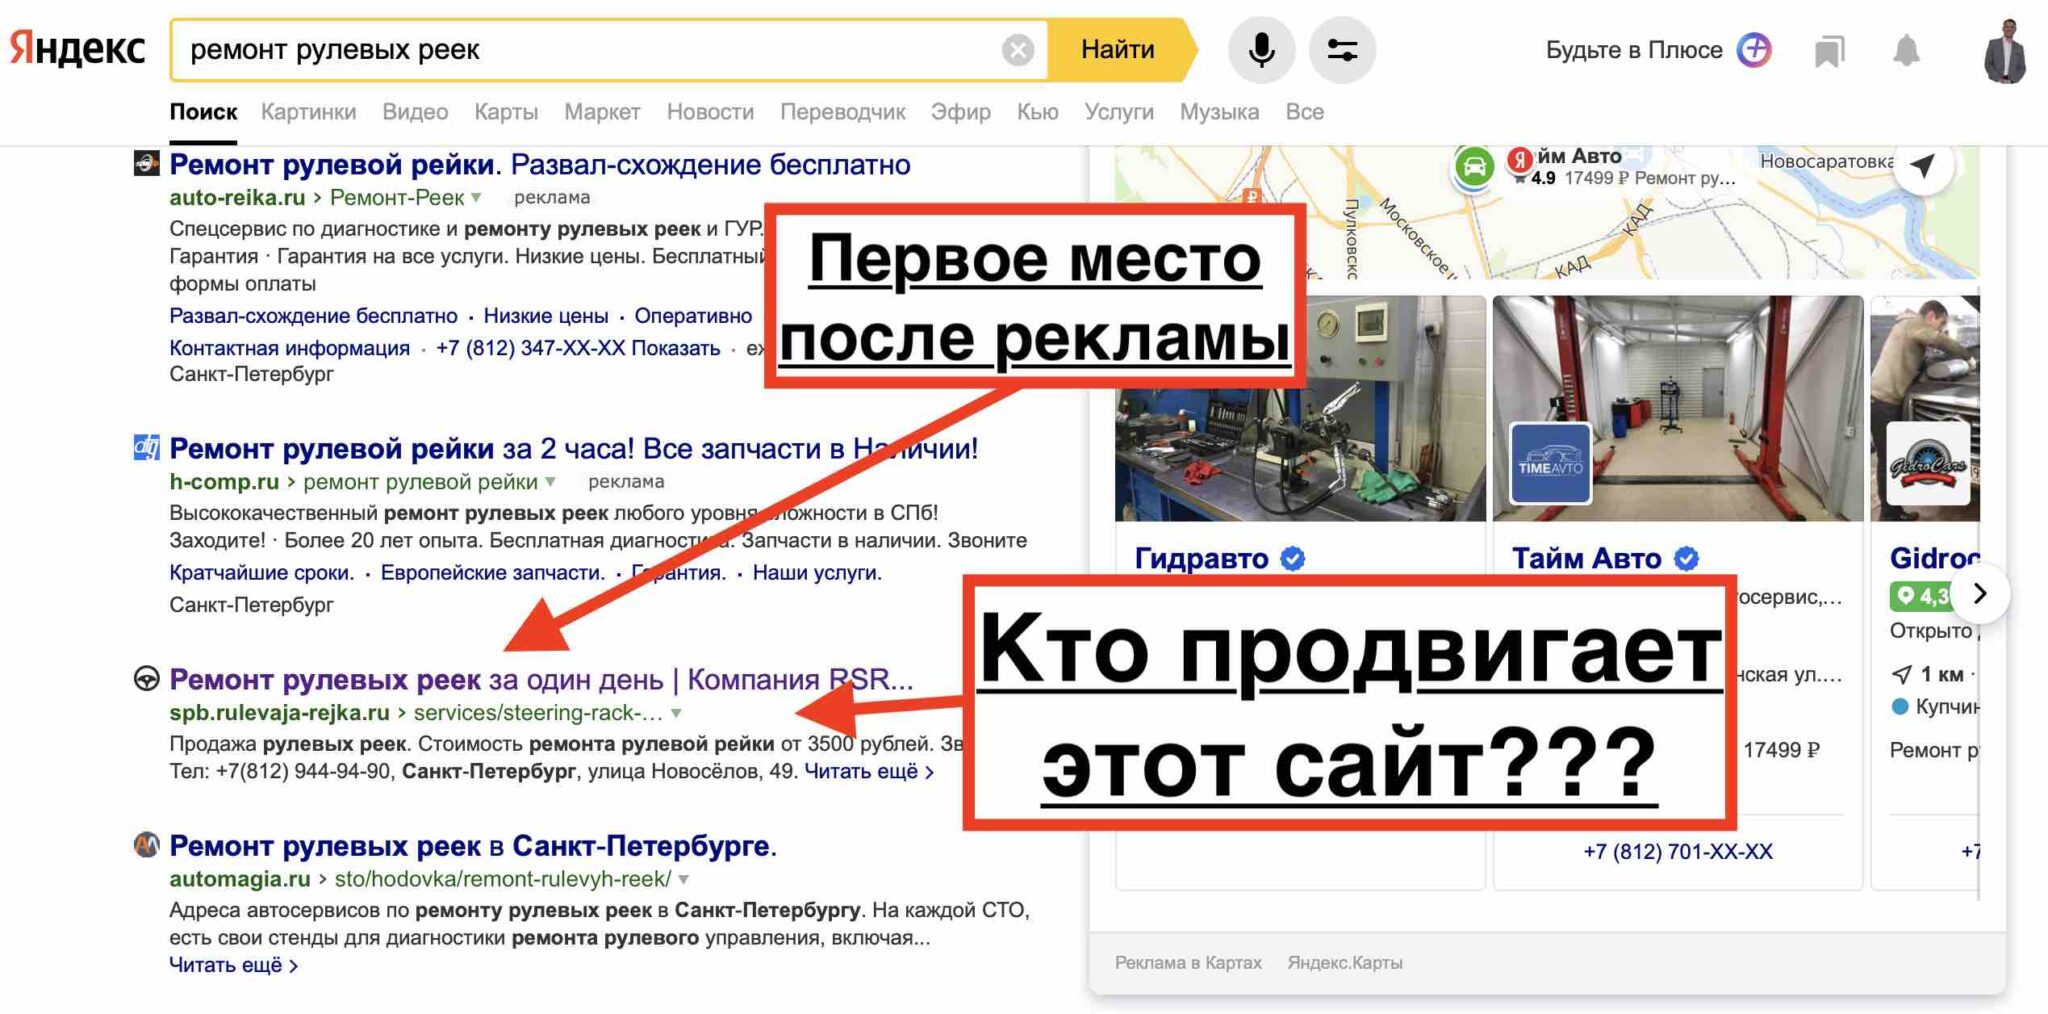 Продвижение сайтов яндексе москва топ сайт. Определить движок сайта.